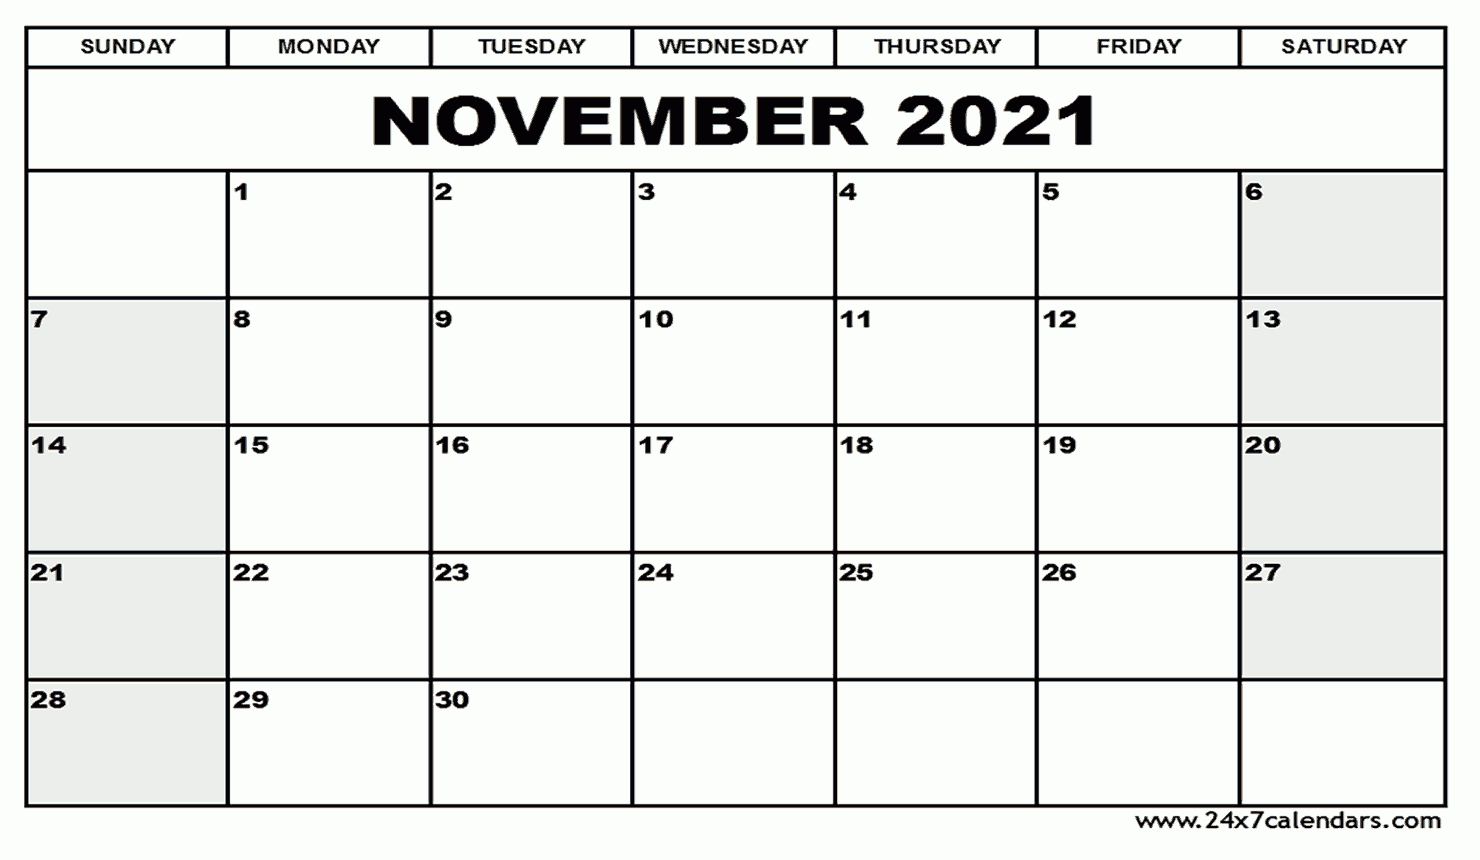 Free Printable November 2021 Calendar : 24X7Calendars November 2021 Calendar Thanksgiving